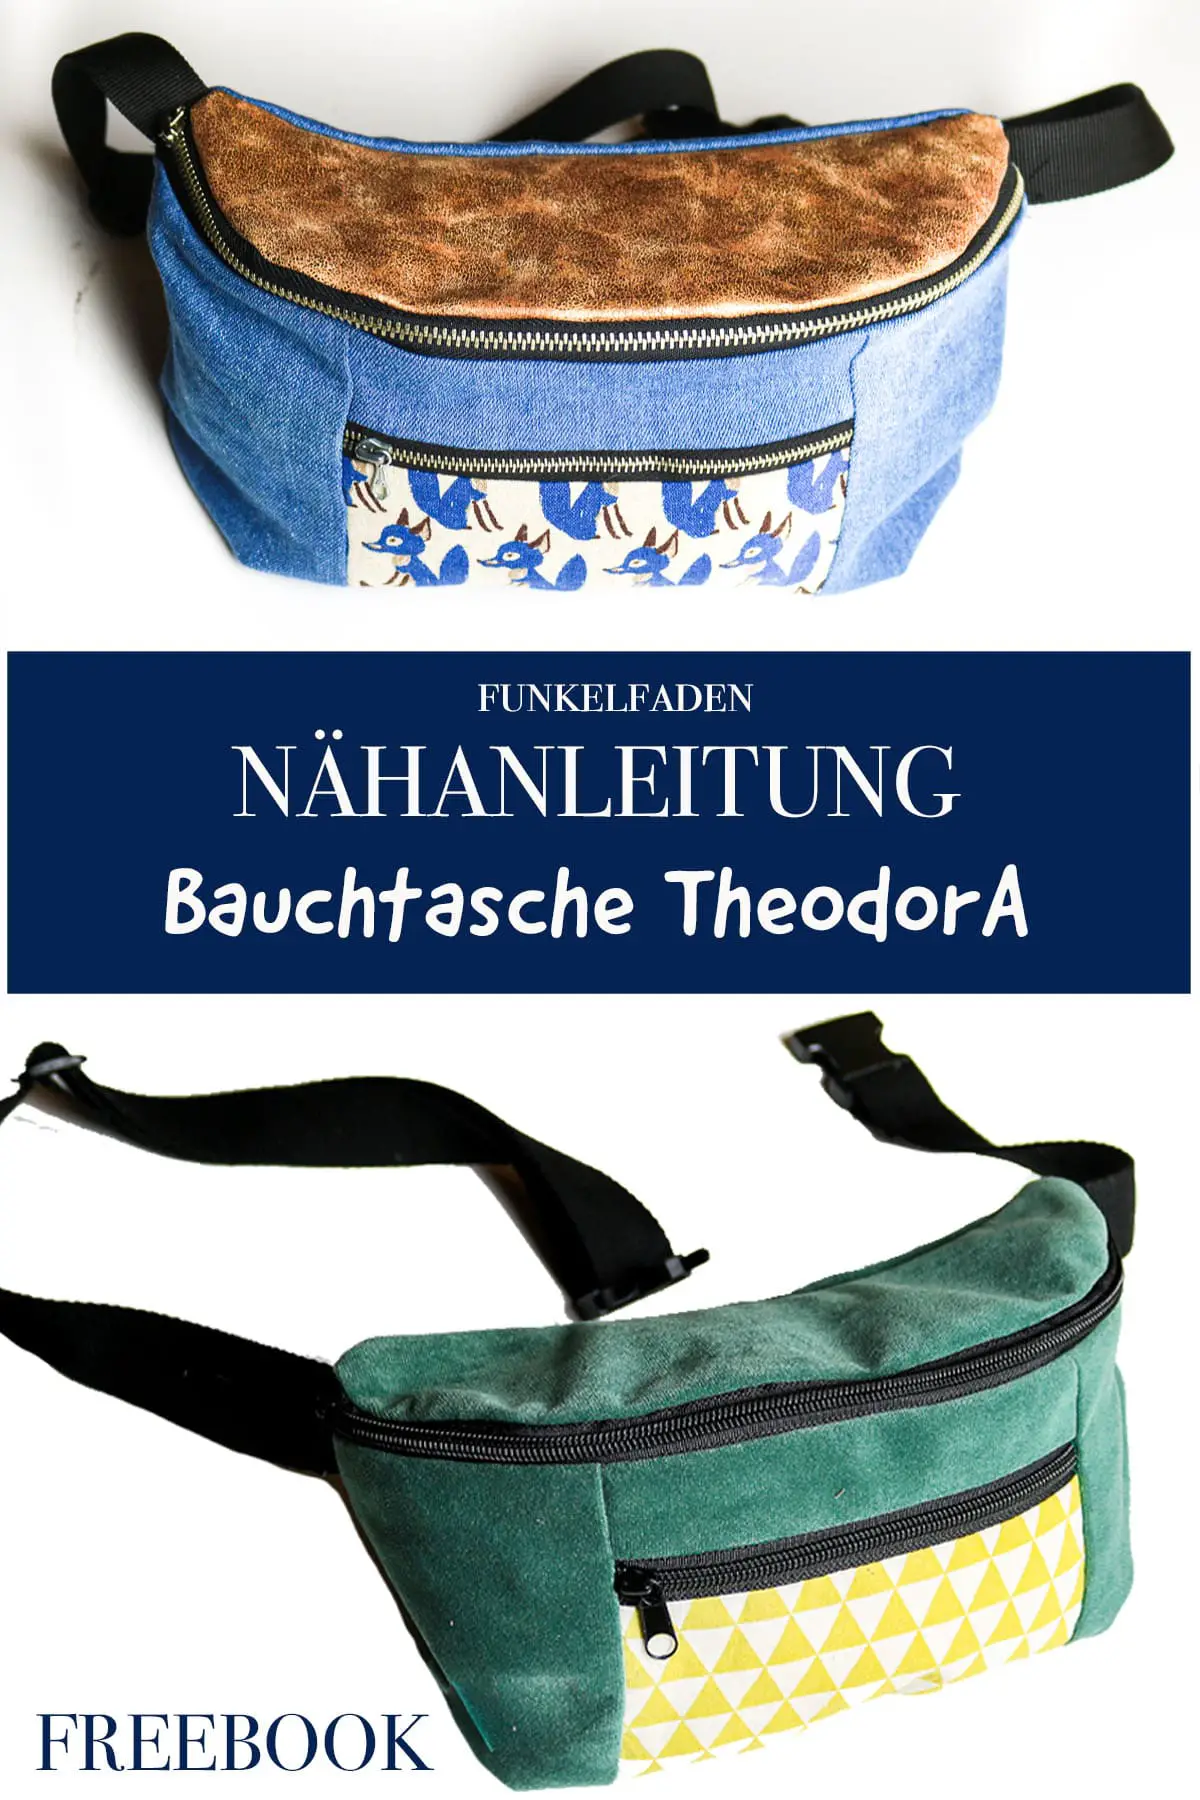 Freebook – Große Bauchtasche TheodorA nähen